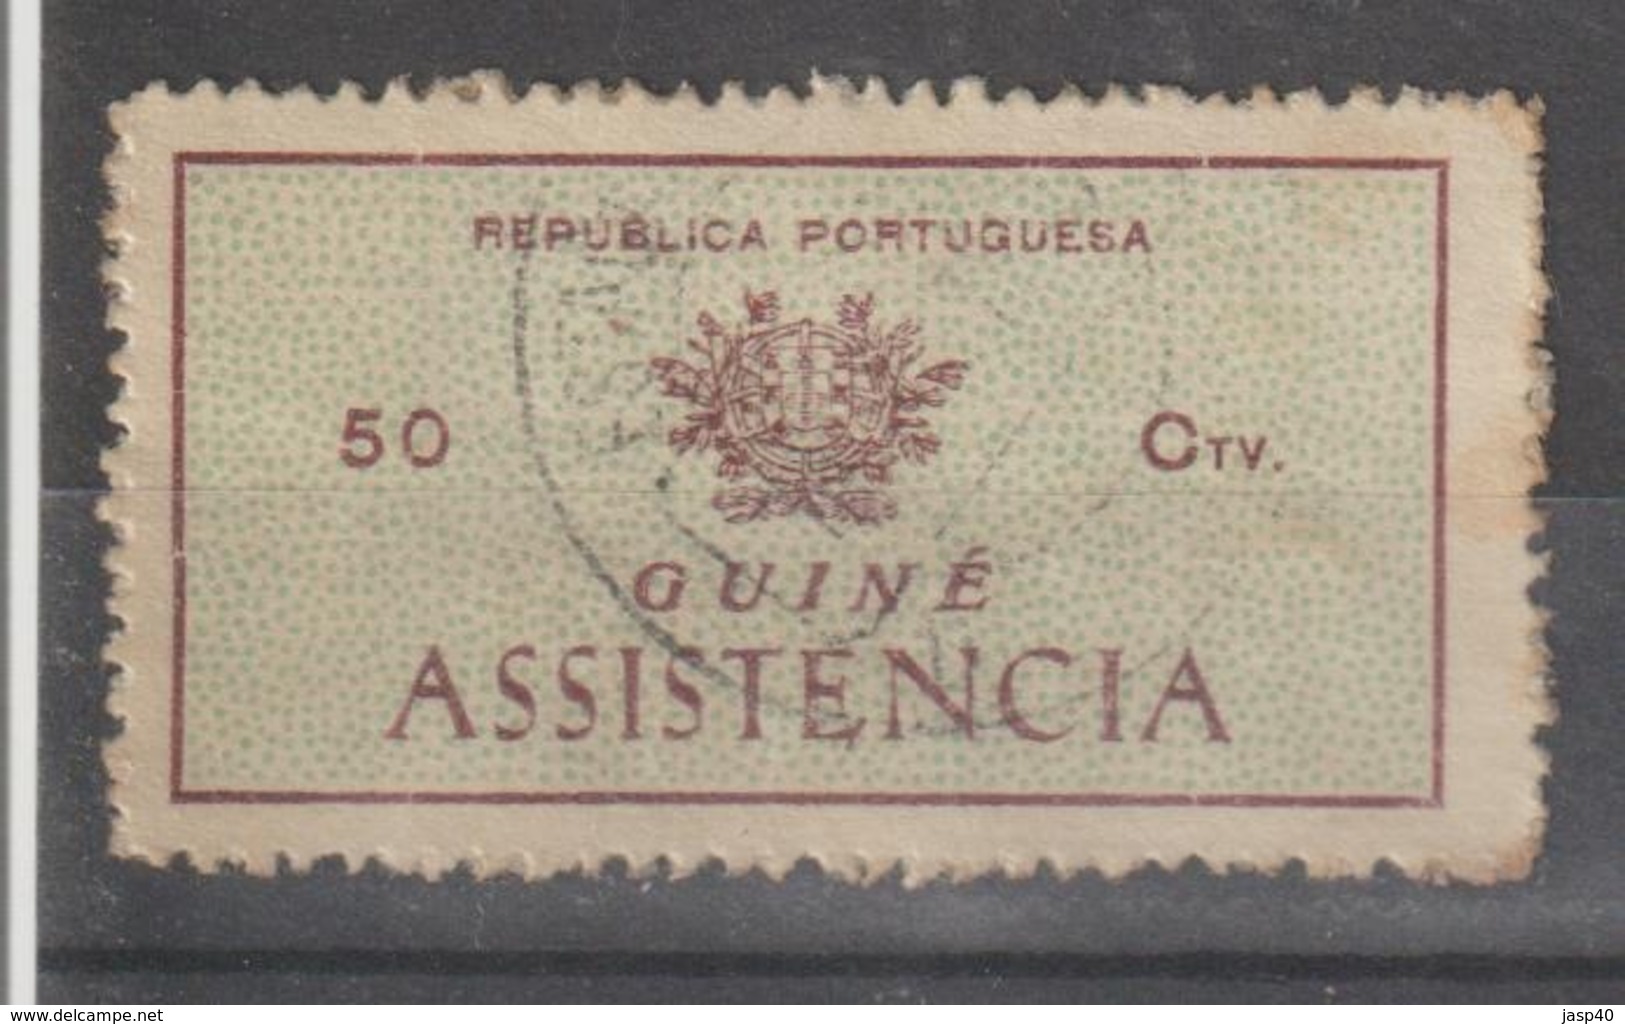 GUINE IMPOSTO POSTAL 8 - USADO - Guinea Portuguesa